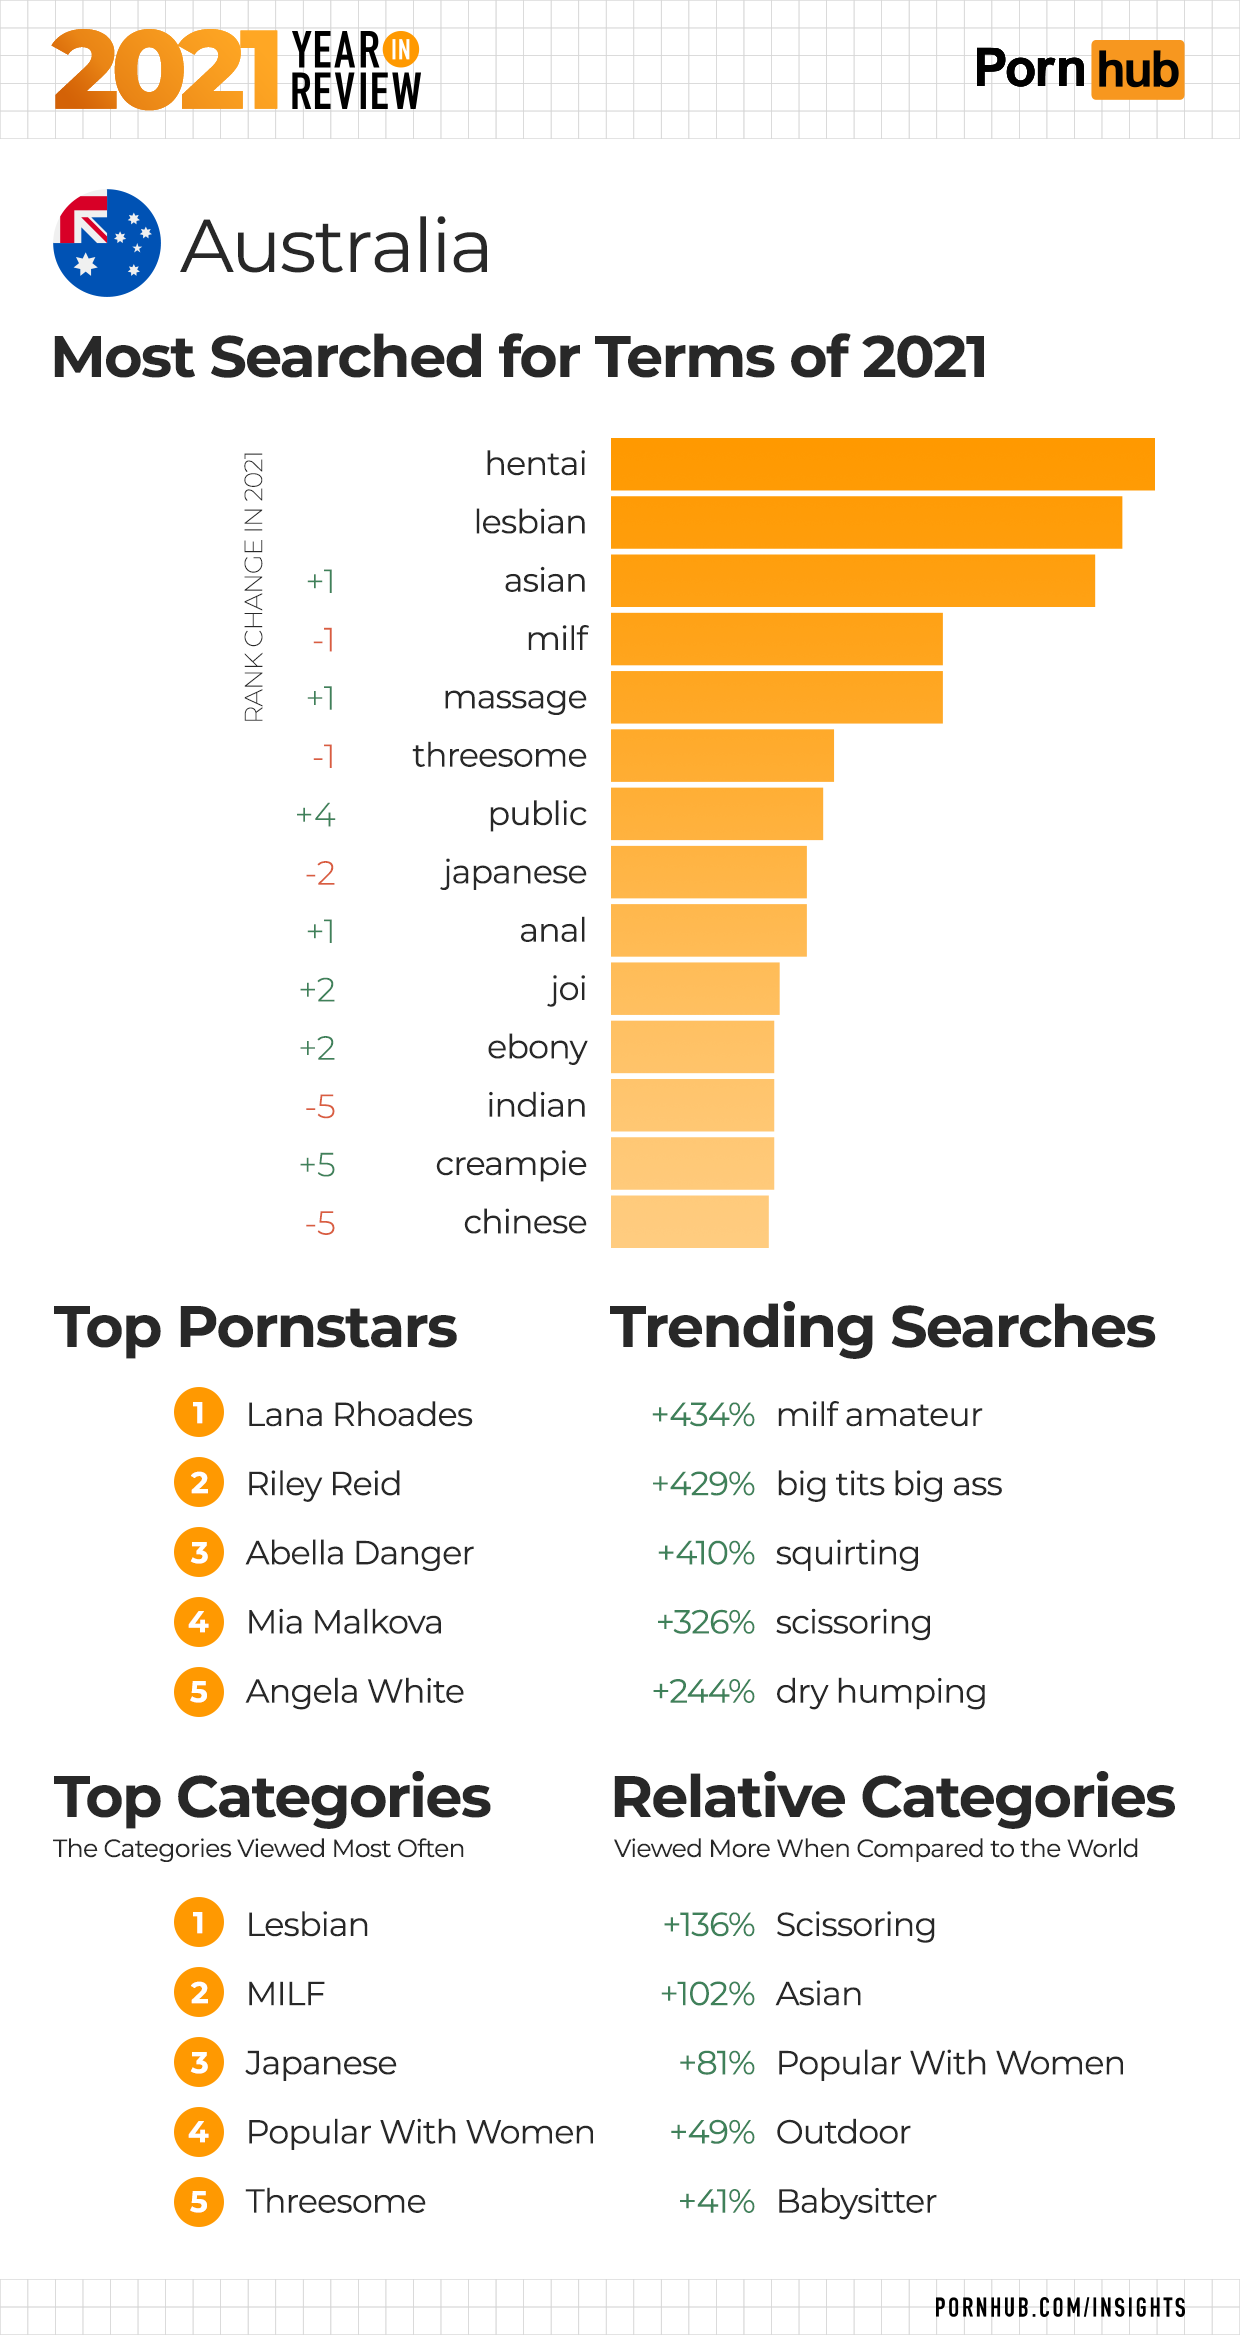 al dutcher recommends Porn Hub Top Rated